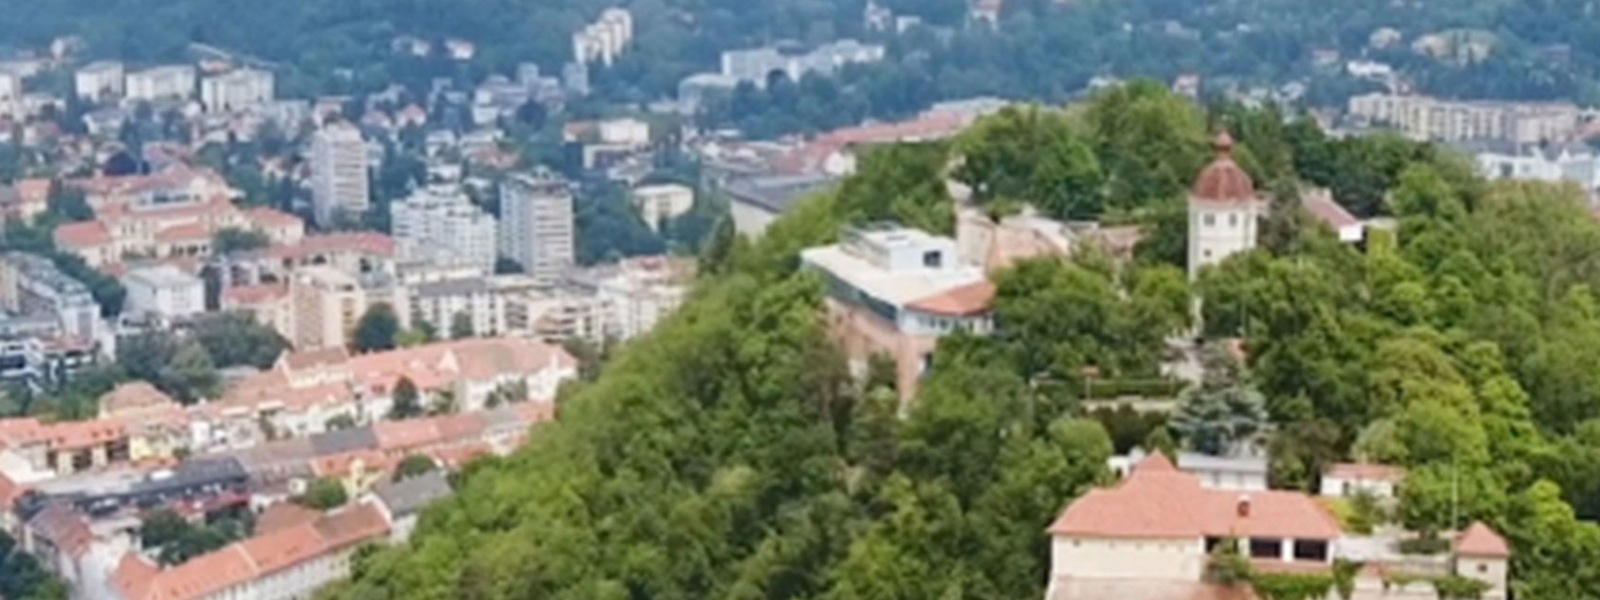 Bild zeigt eine Stadt von oben, auf dem ein Hügel voll mit Bäumen im Fokus steht.